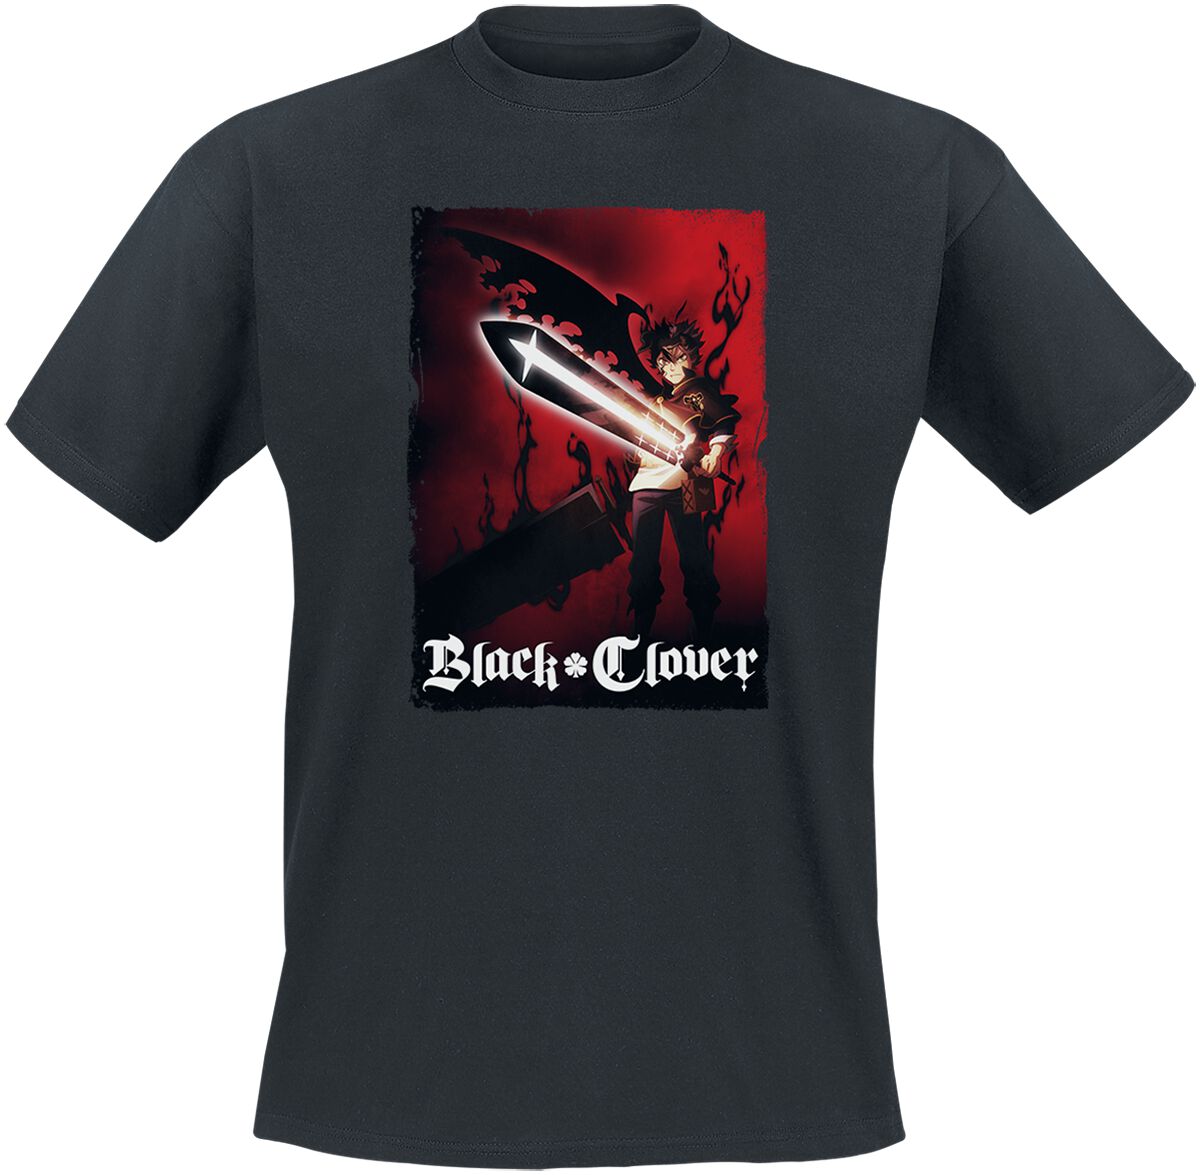 Black Clover - Anime T-Shirt - Find Your Power - S bis M - für Männer - Größe M - schwarz  - Lizenzierter Fanartikel